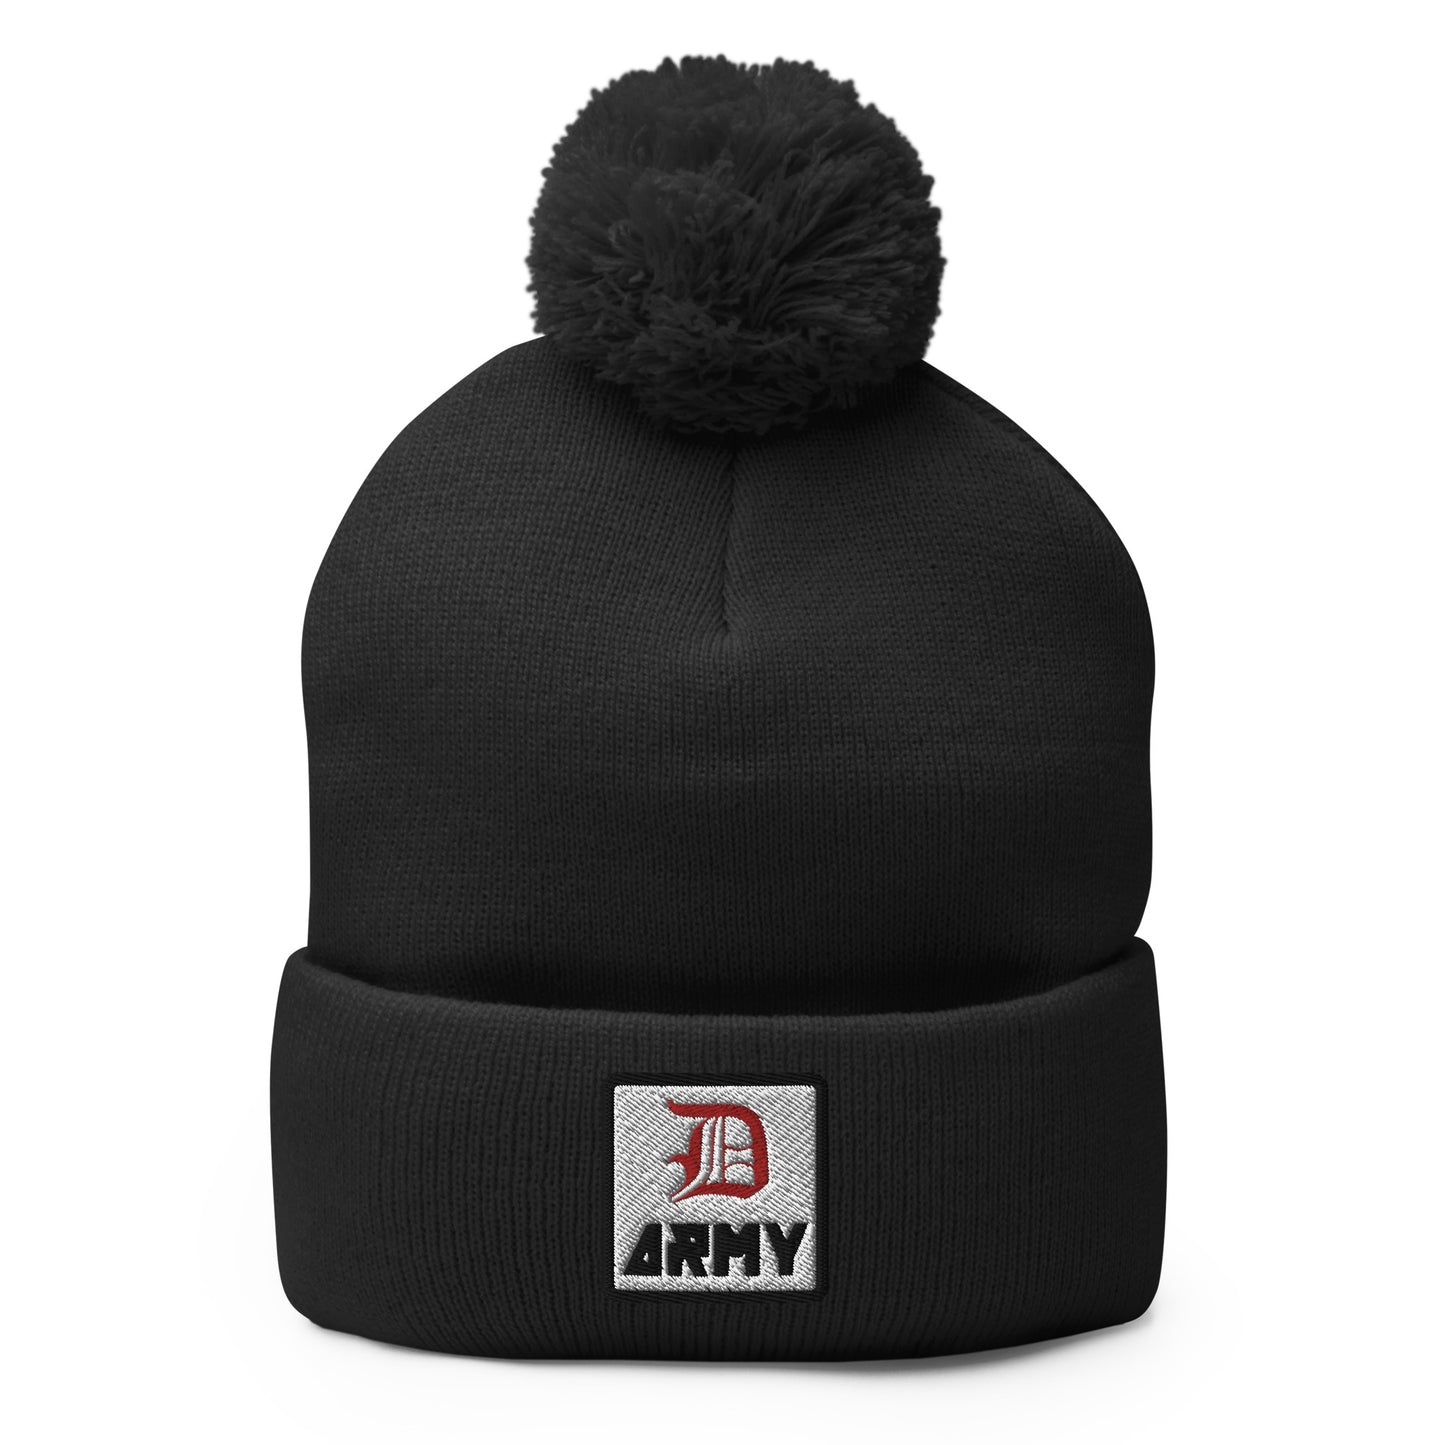 Detroit Army 'Original : D' - Black Embroidered Pom-Pom